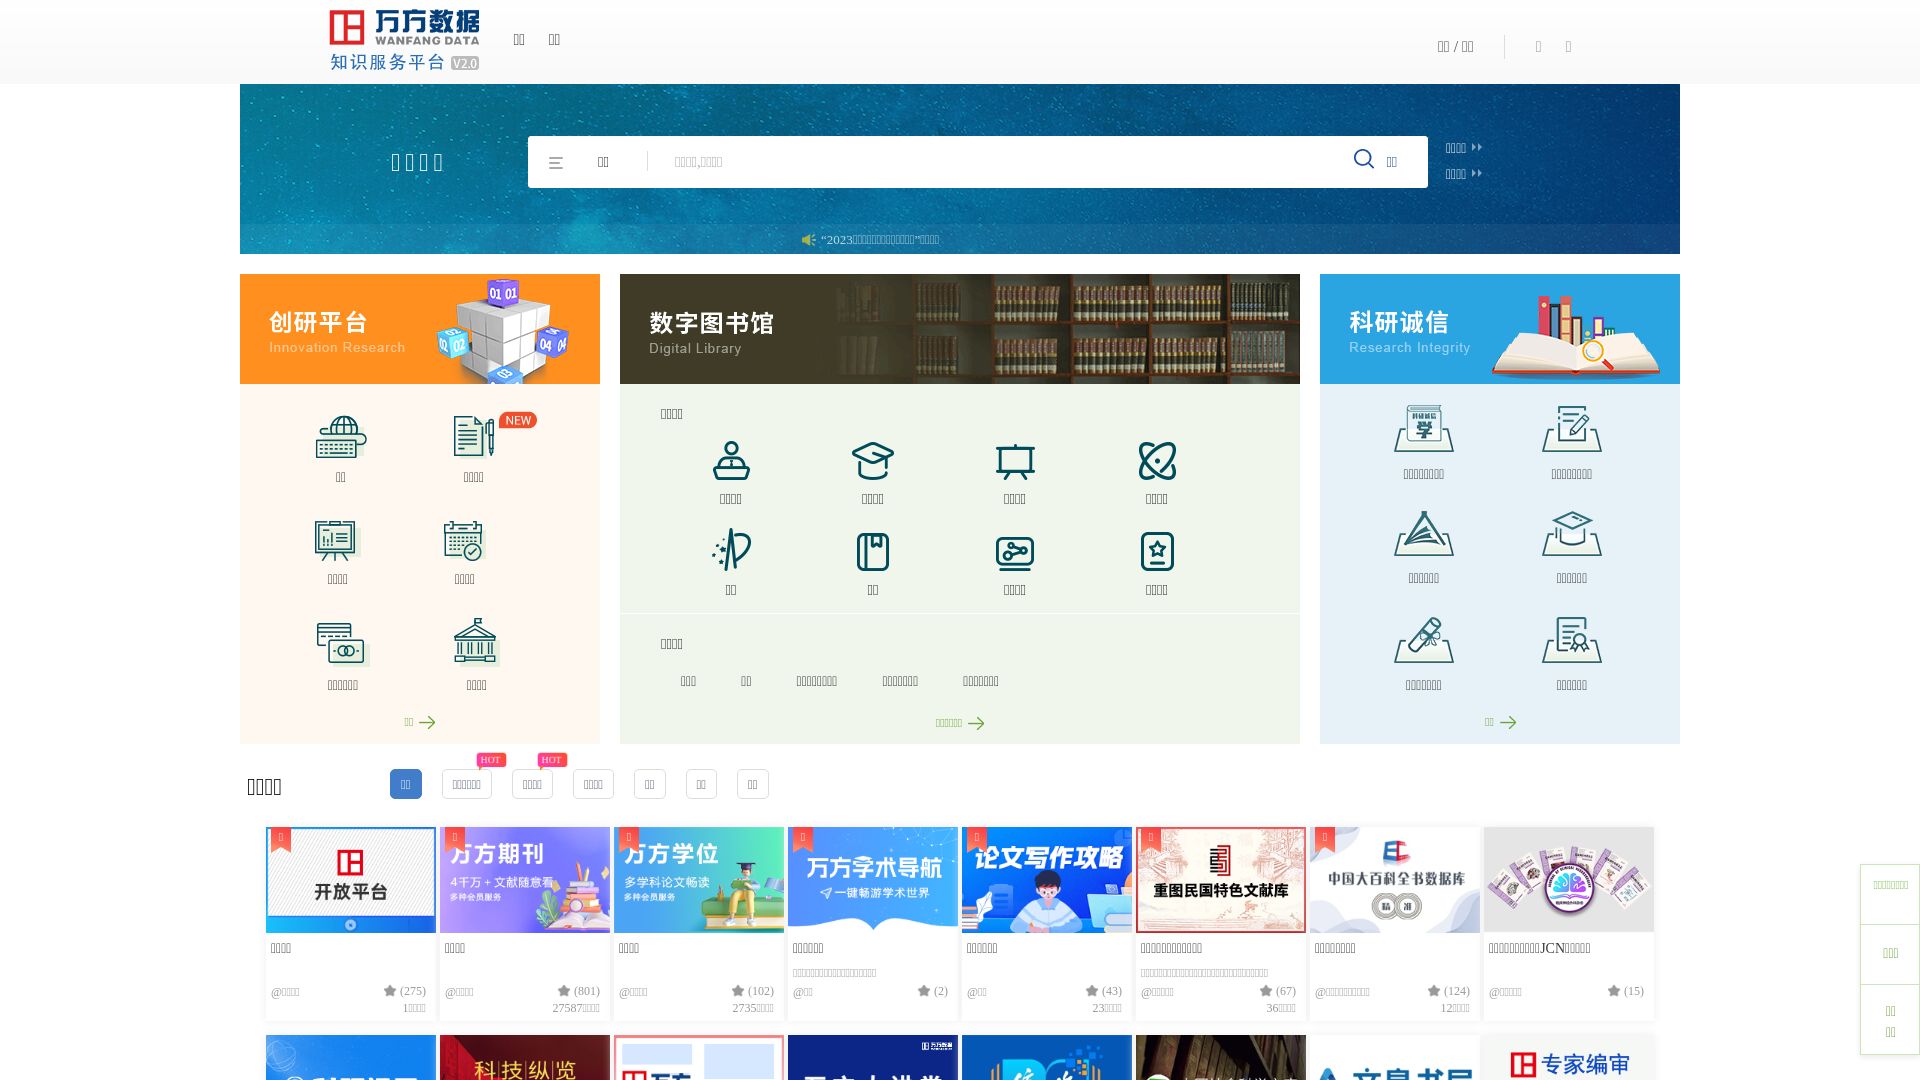 Stato del sito web wanfangdata.com.cn è   ONLINE